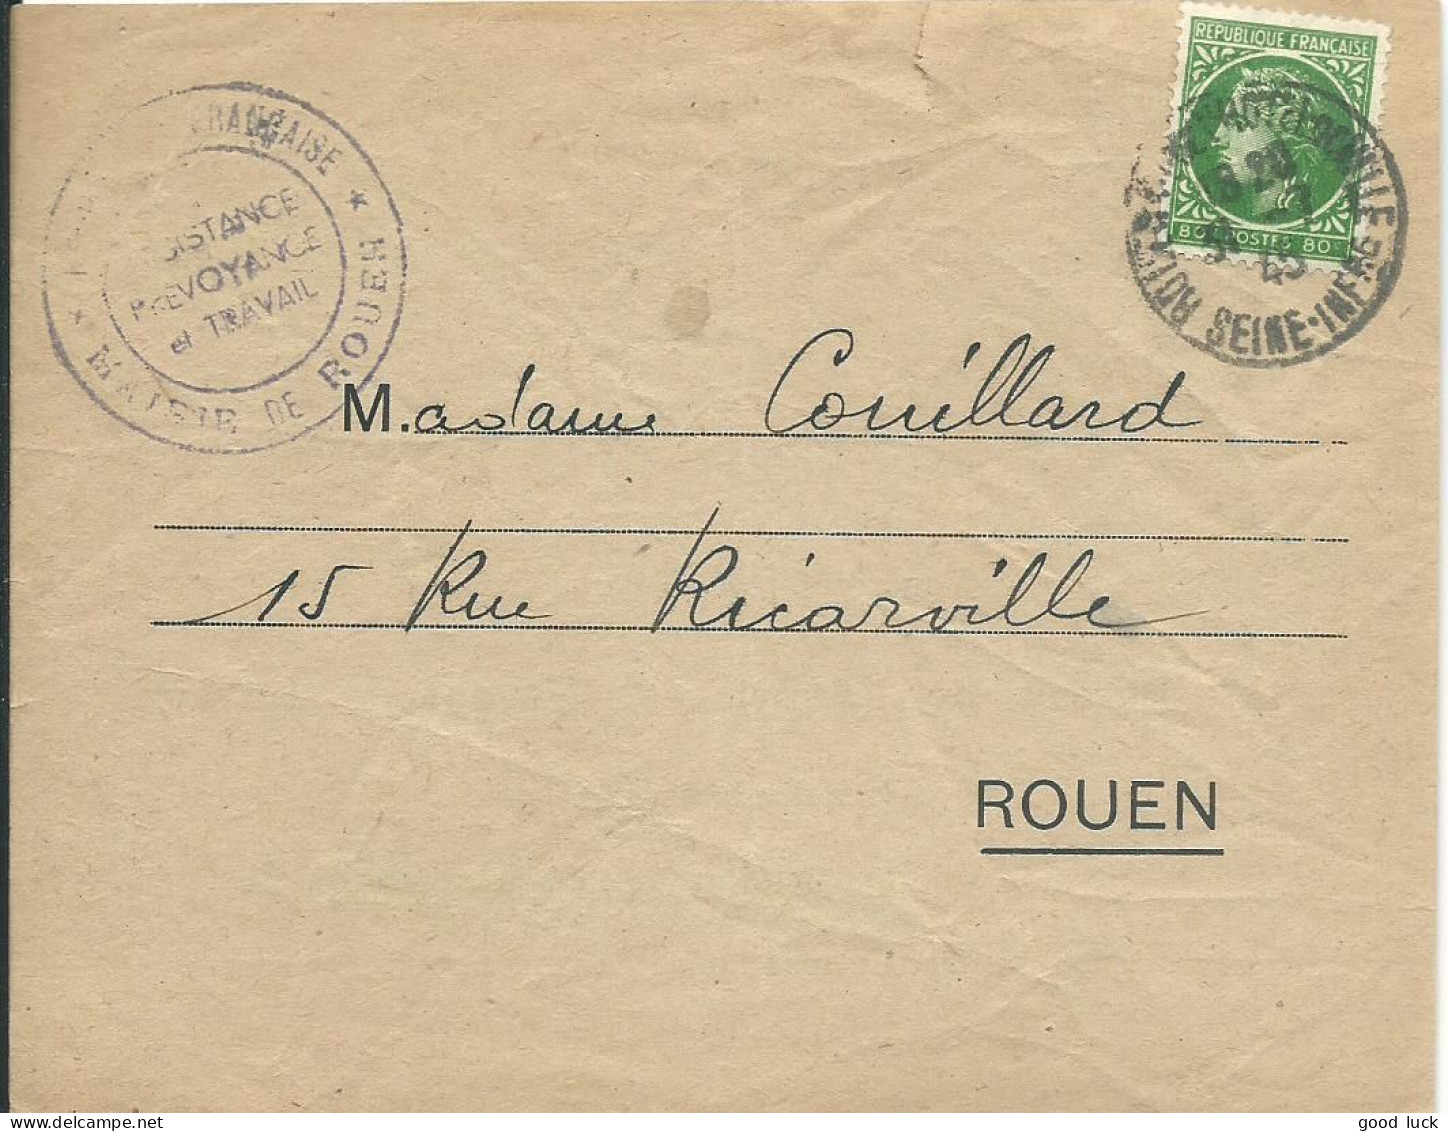 FRANCE LETTRE 80c MAIRIE DE ROUEN POUR ROUEN ( SEINE INFERIEURE ) DE 1945 LETTRE COVER - 1945-47 Ceres Of Mazelin